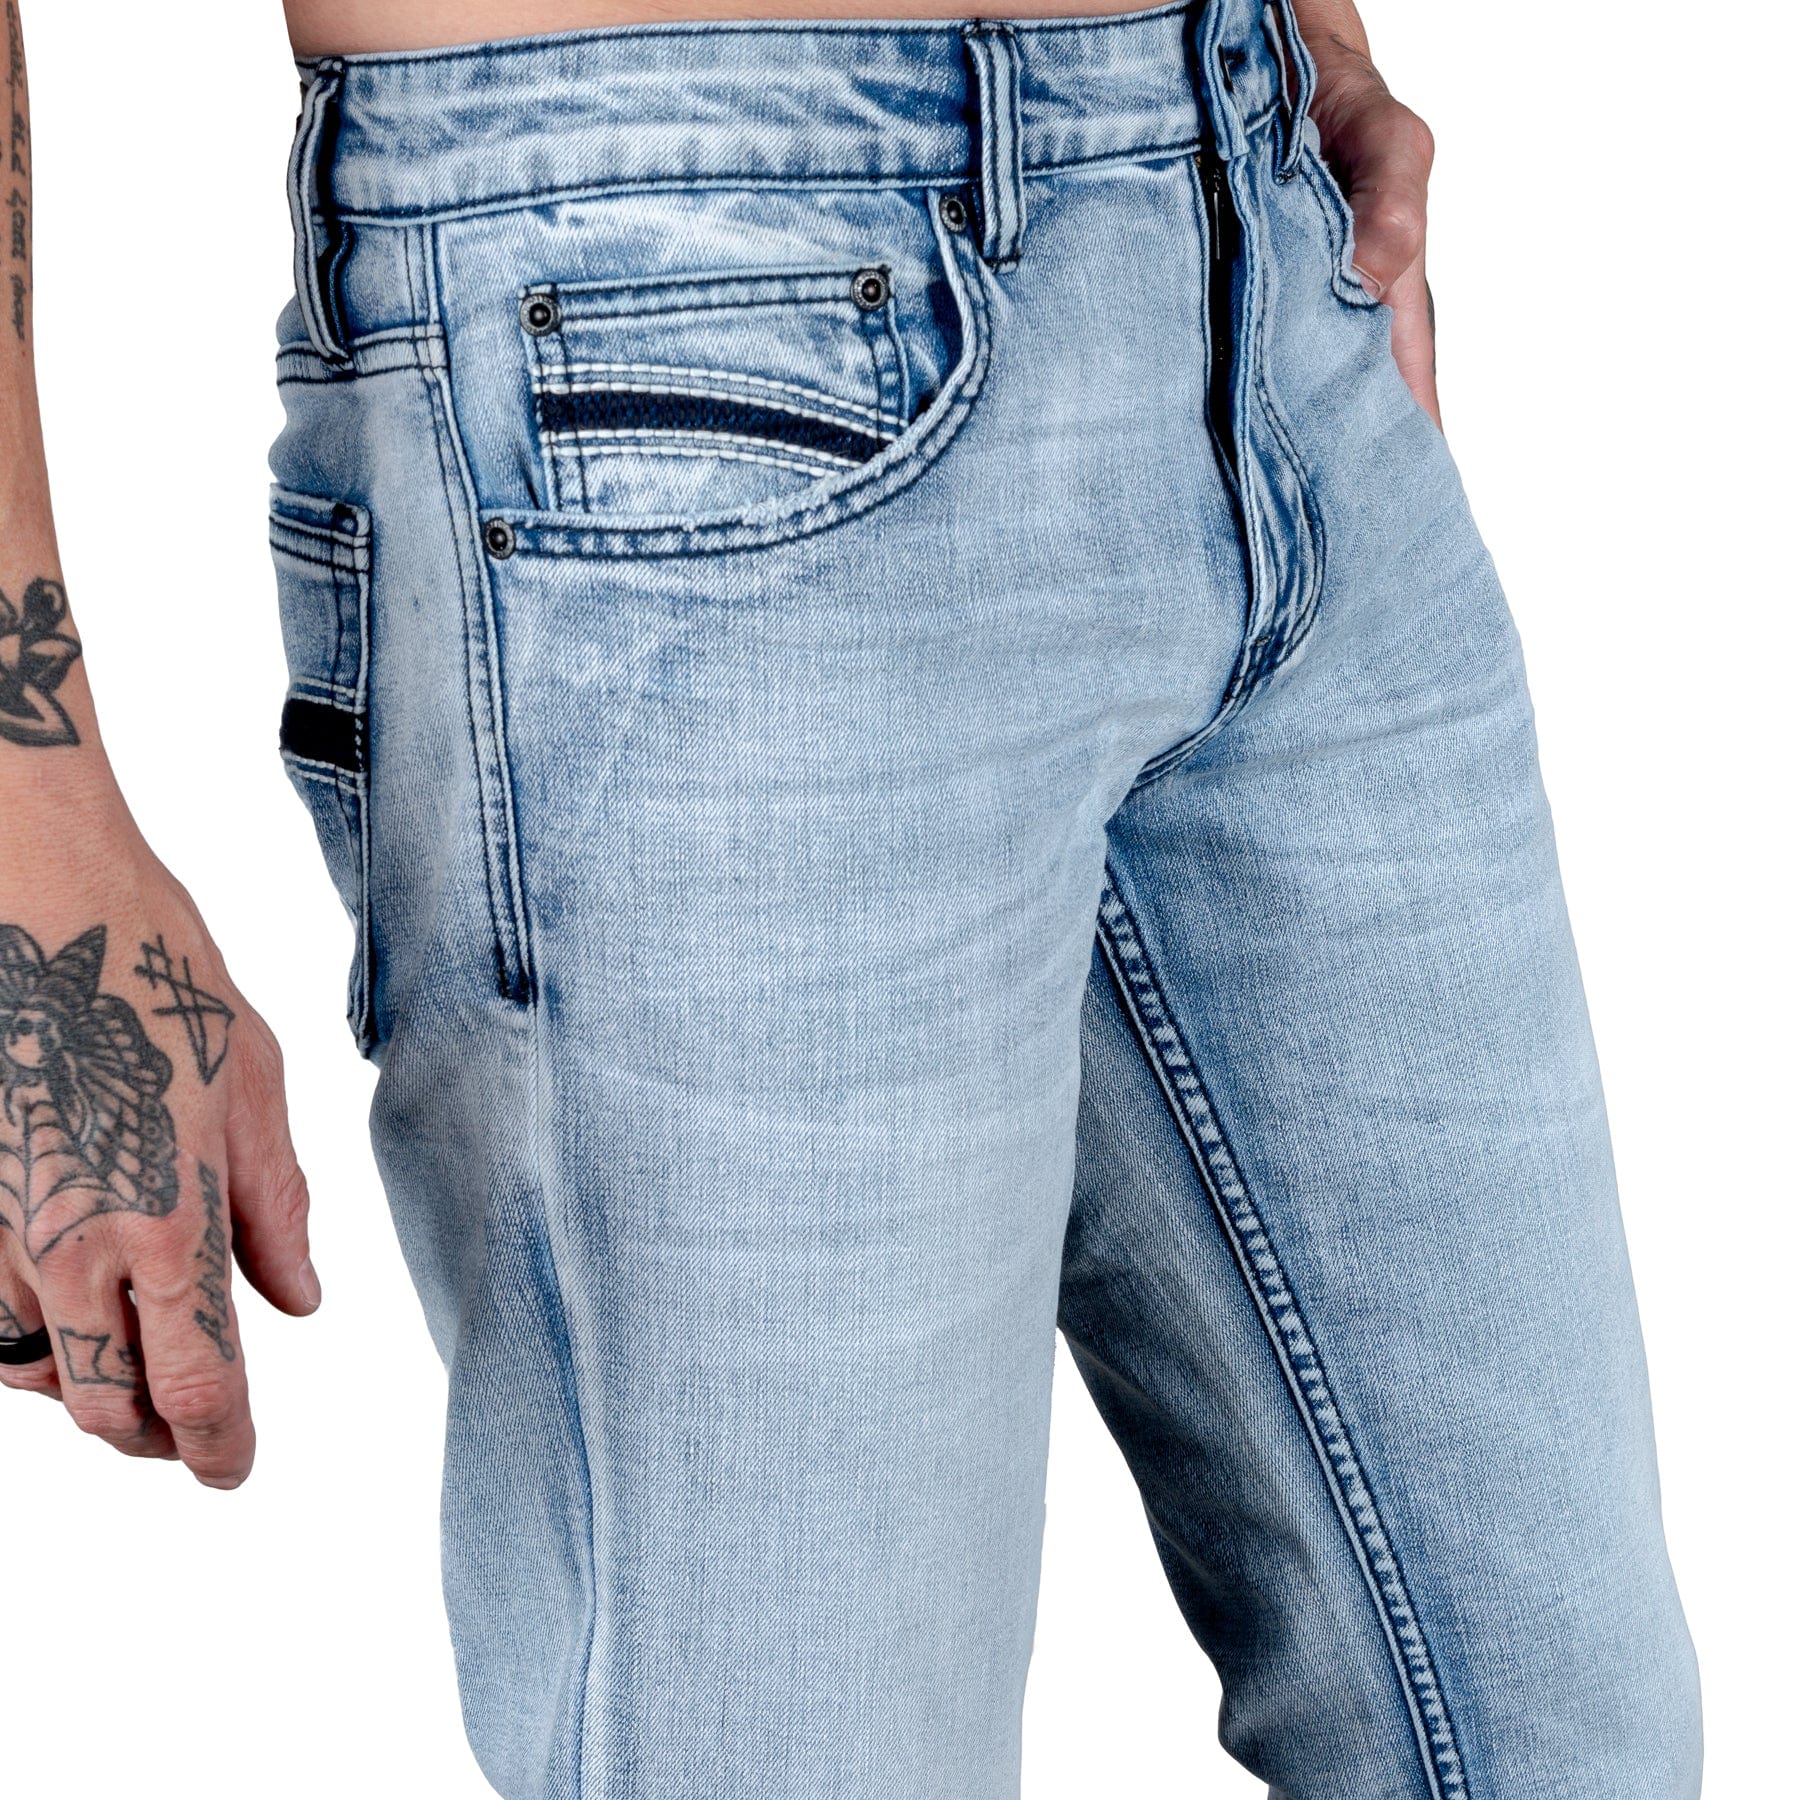 Essentials Collection Pants Trailblazer Jeans - Classic Blue